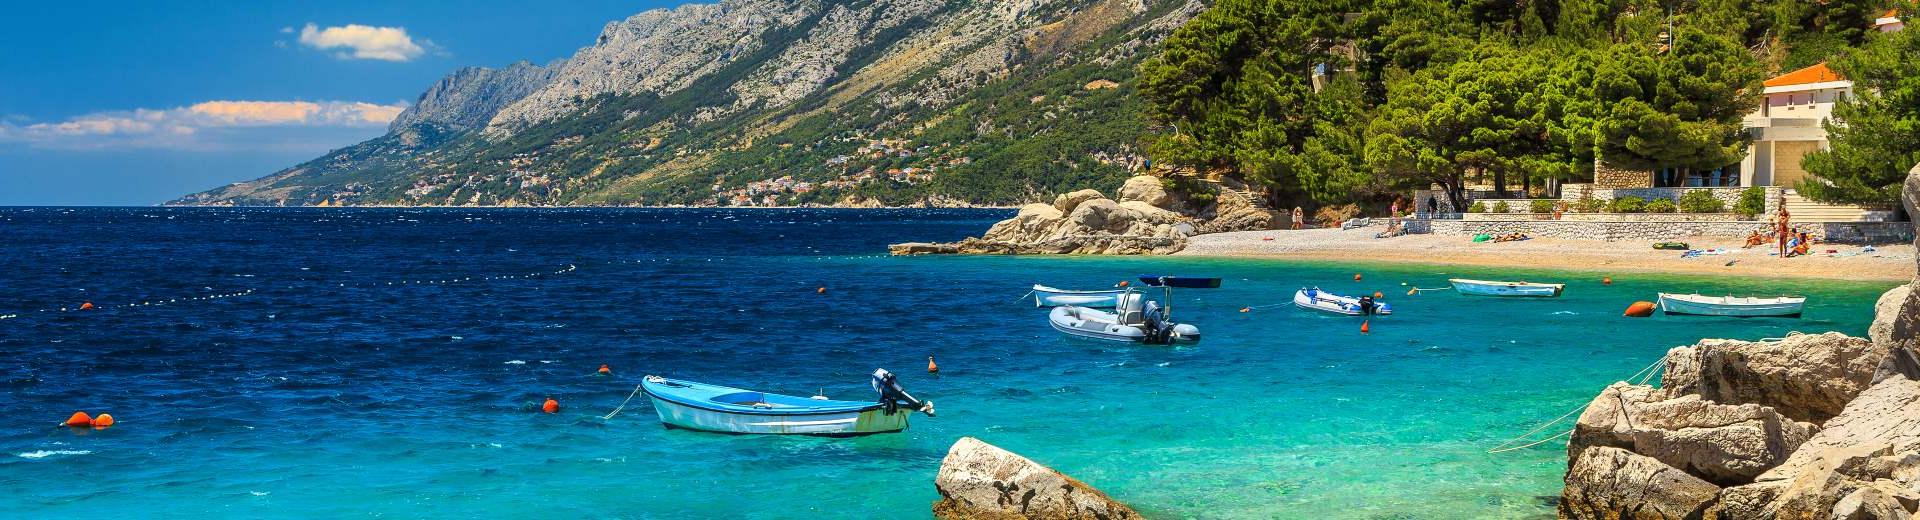 Ferienwohnung Rijeka – ein Urlaubsort ohne Massentourismus - EuroRelais